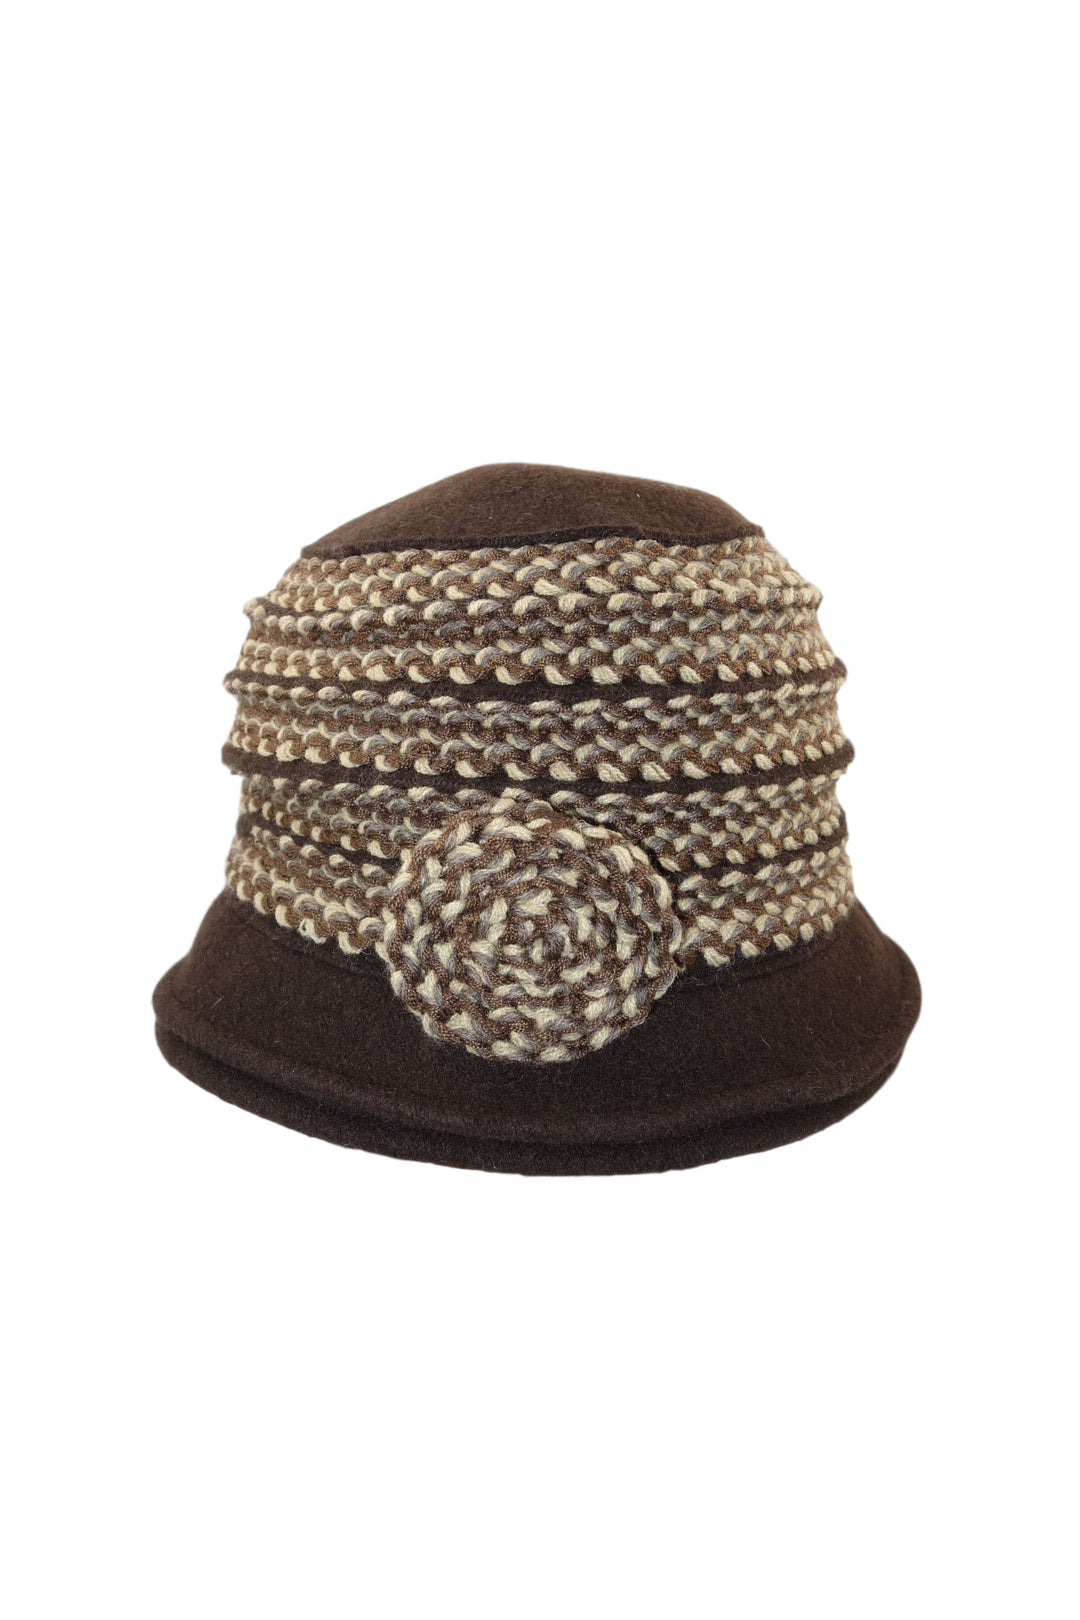 Mayser Hut mit Strickkombi-Mayser-hutwelt